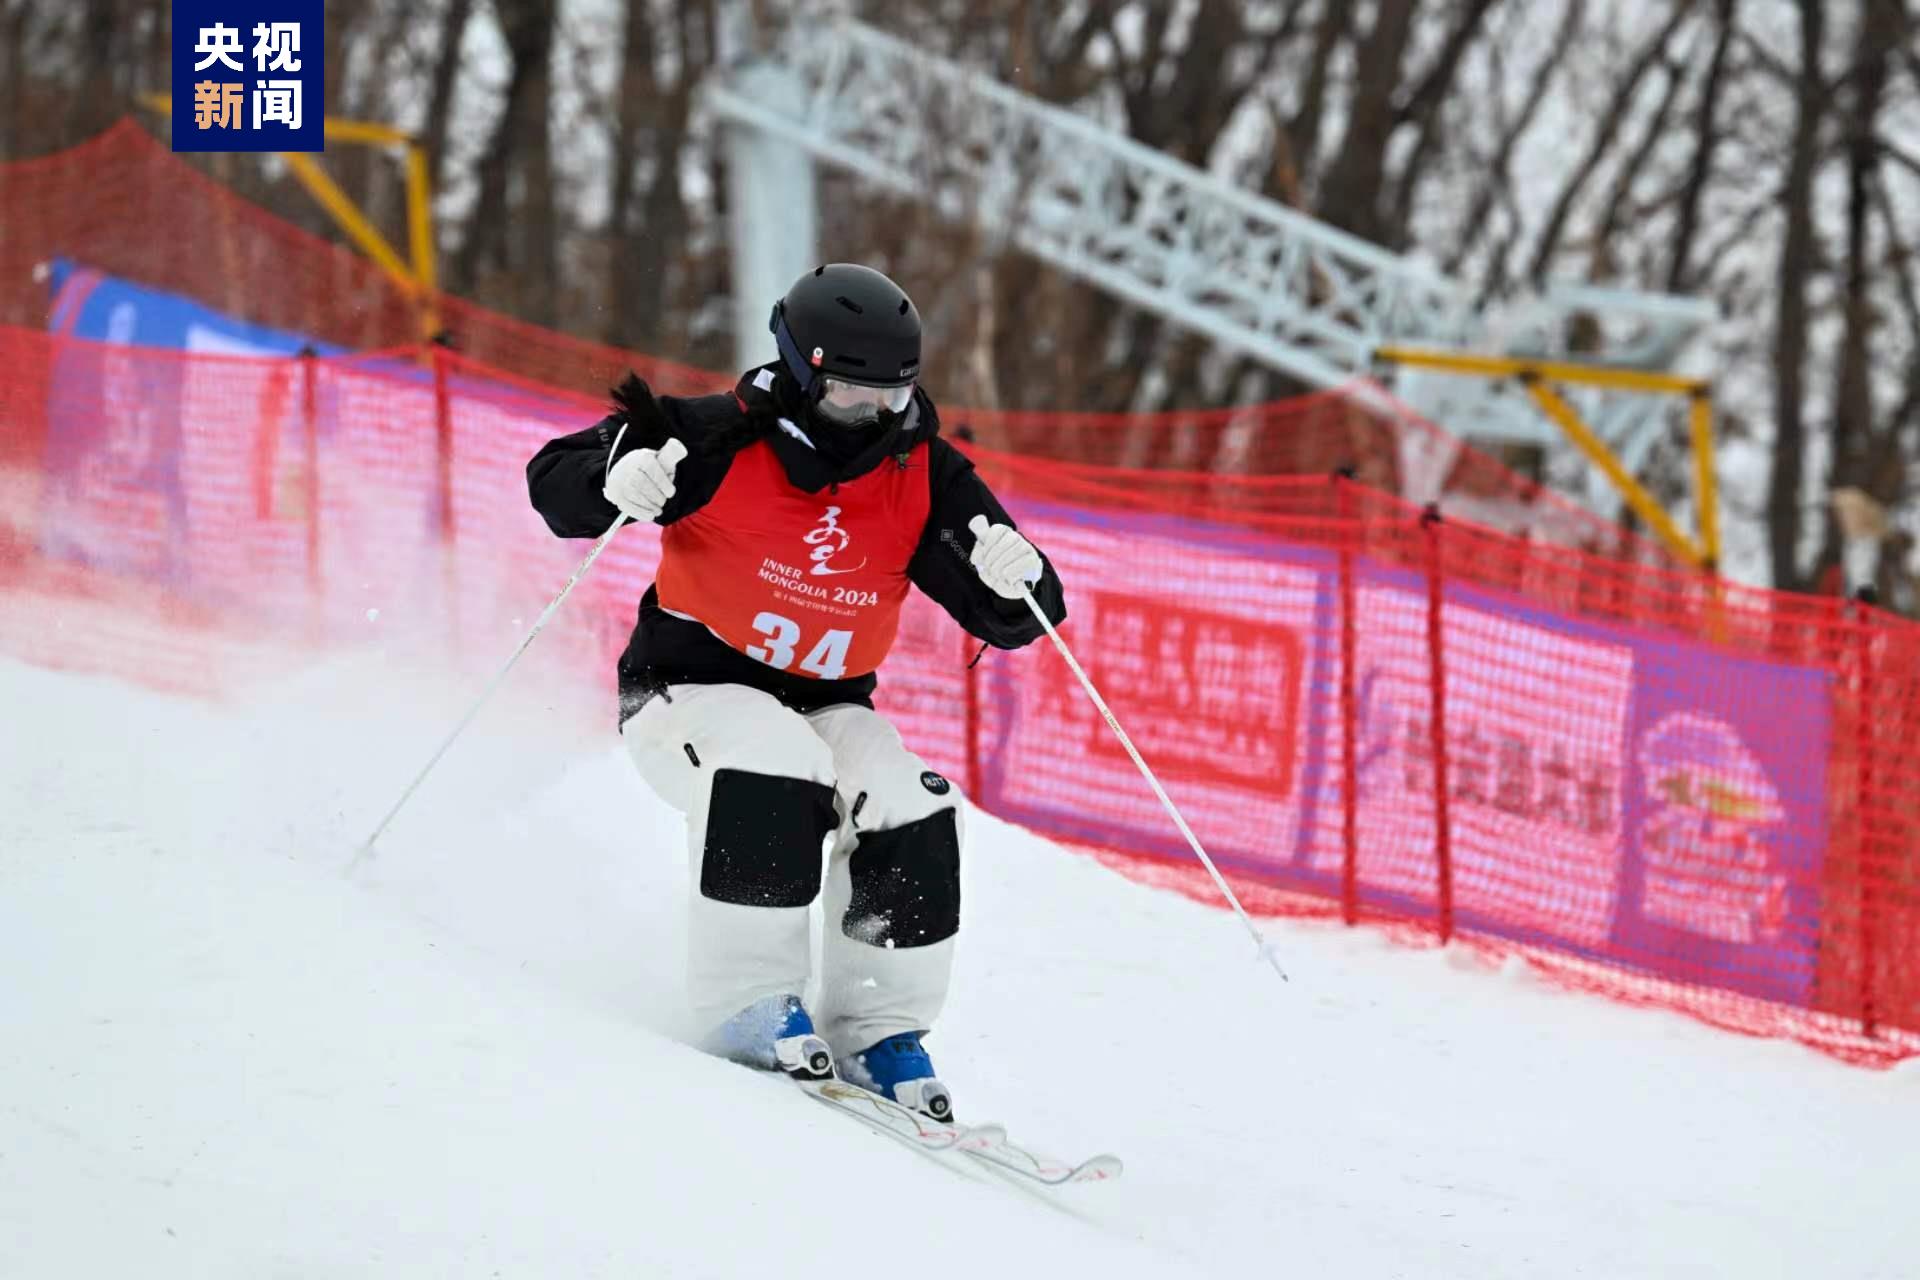 19岁小将郝丽赟斩获“十四冬”自由式滑雪雪上技巧公开组女子金牌